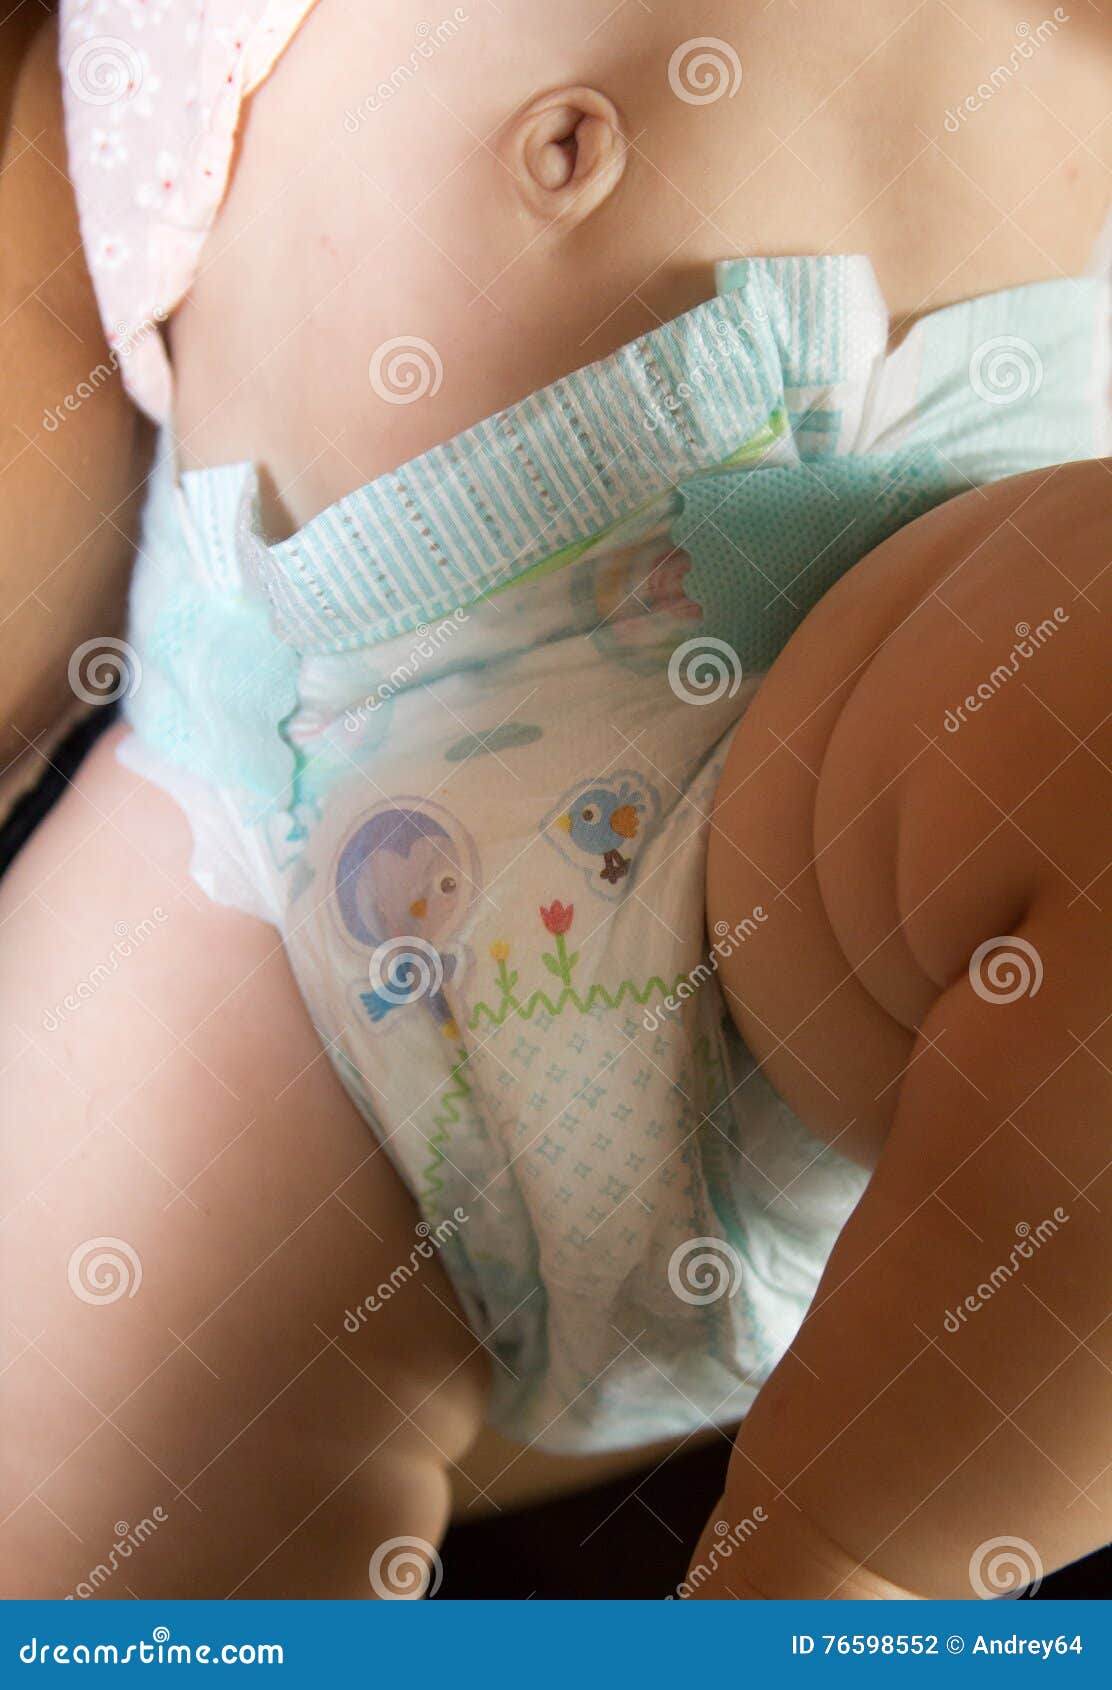 daniel van auken add girls in diapers pictures photo